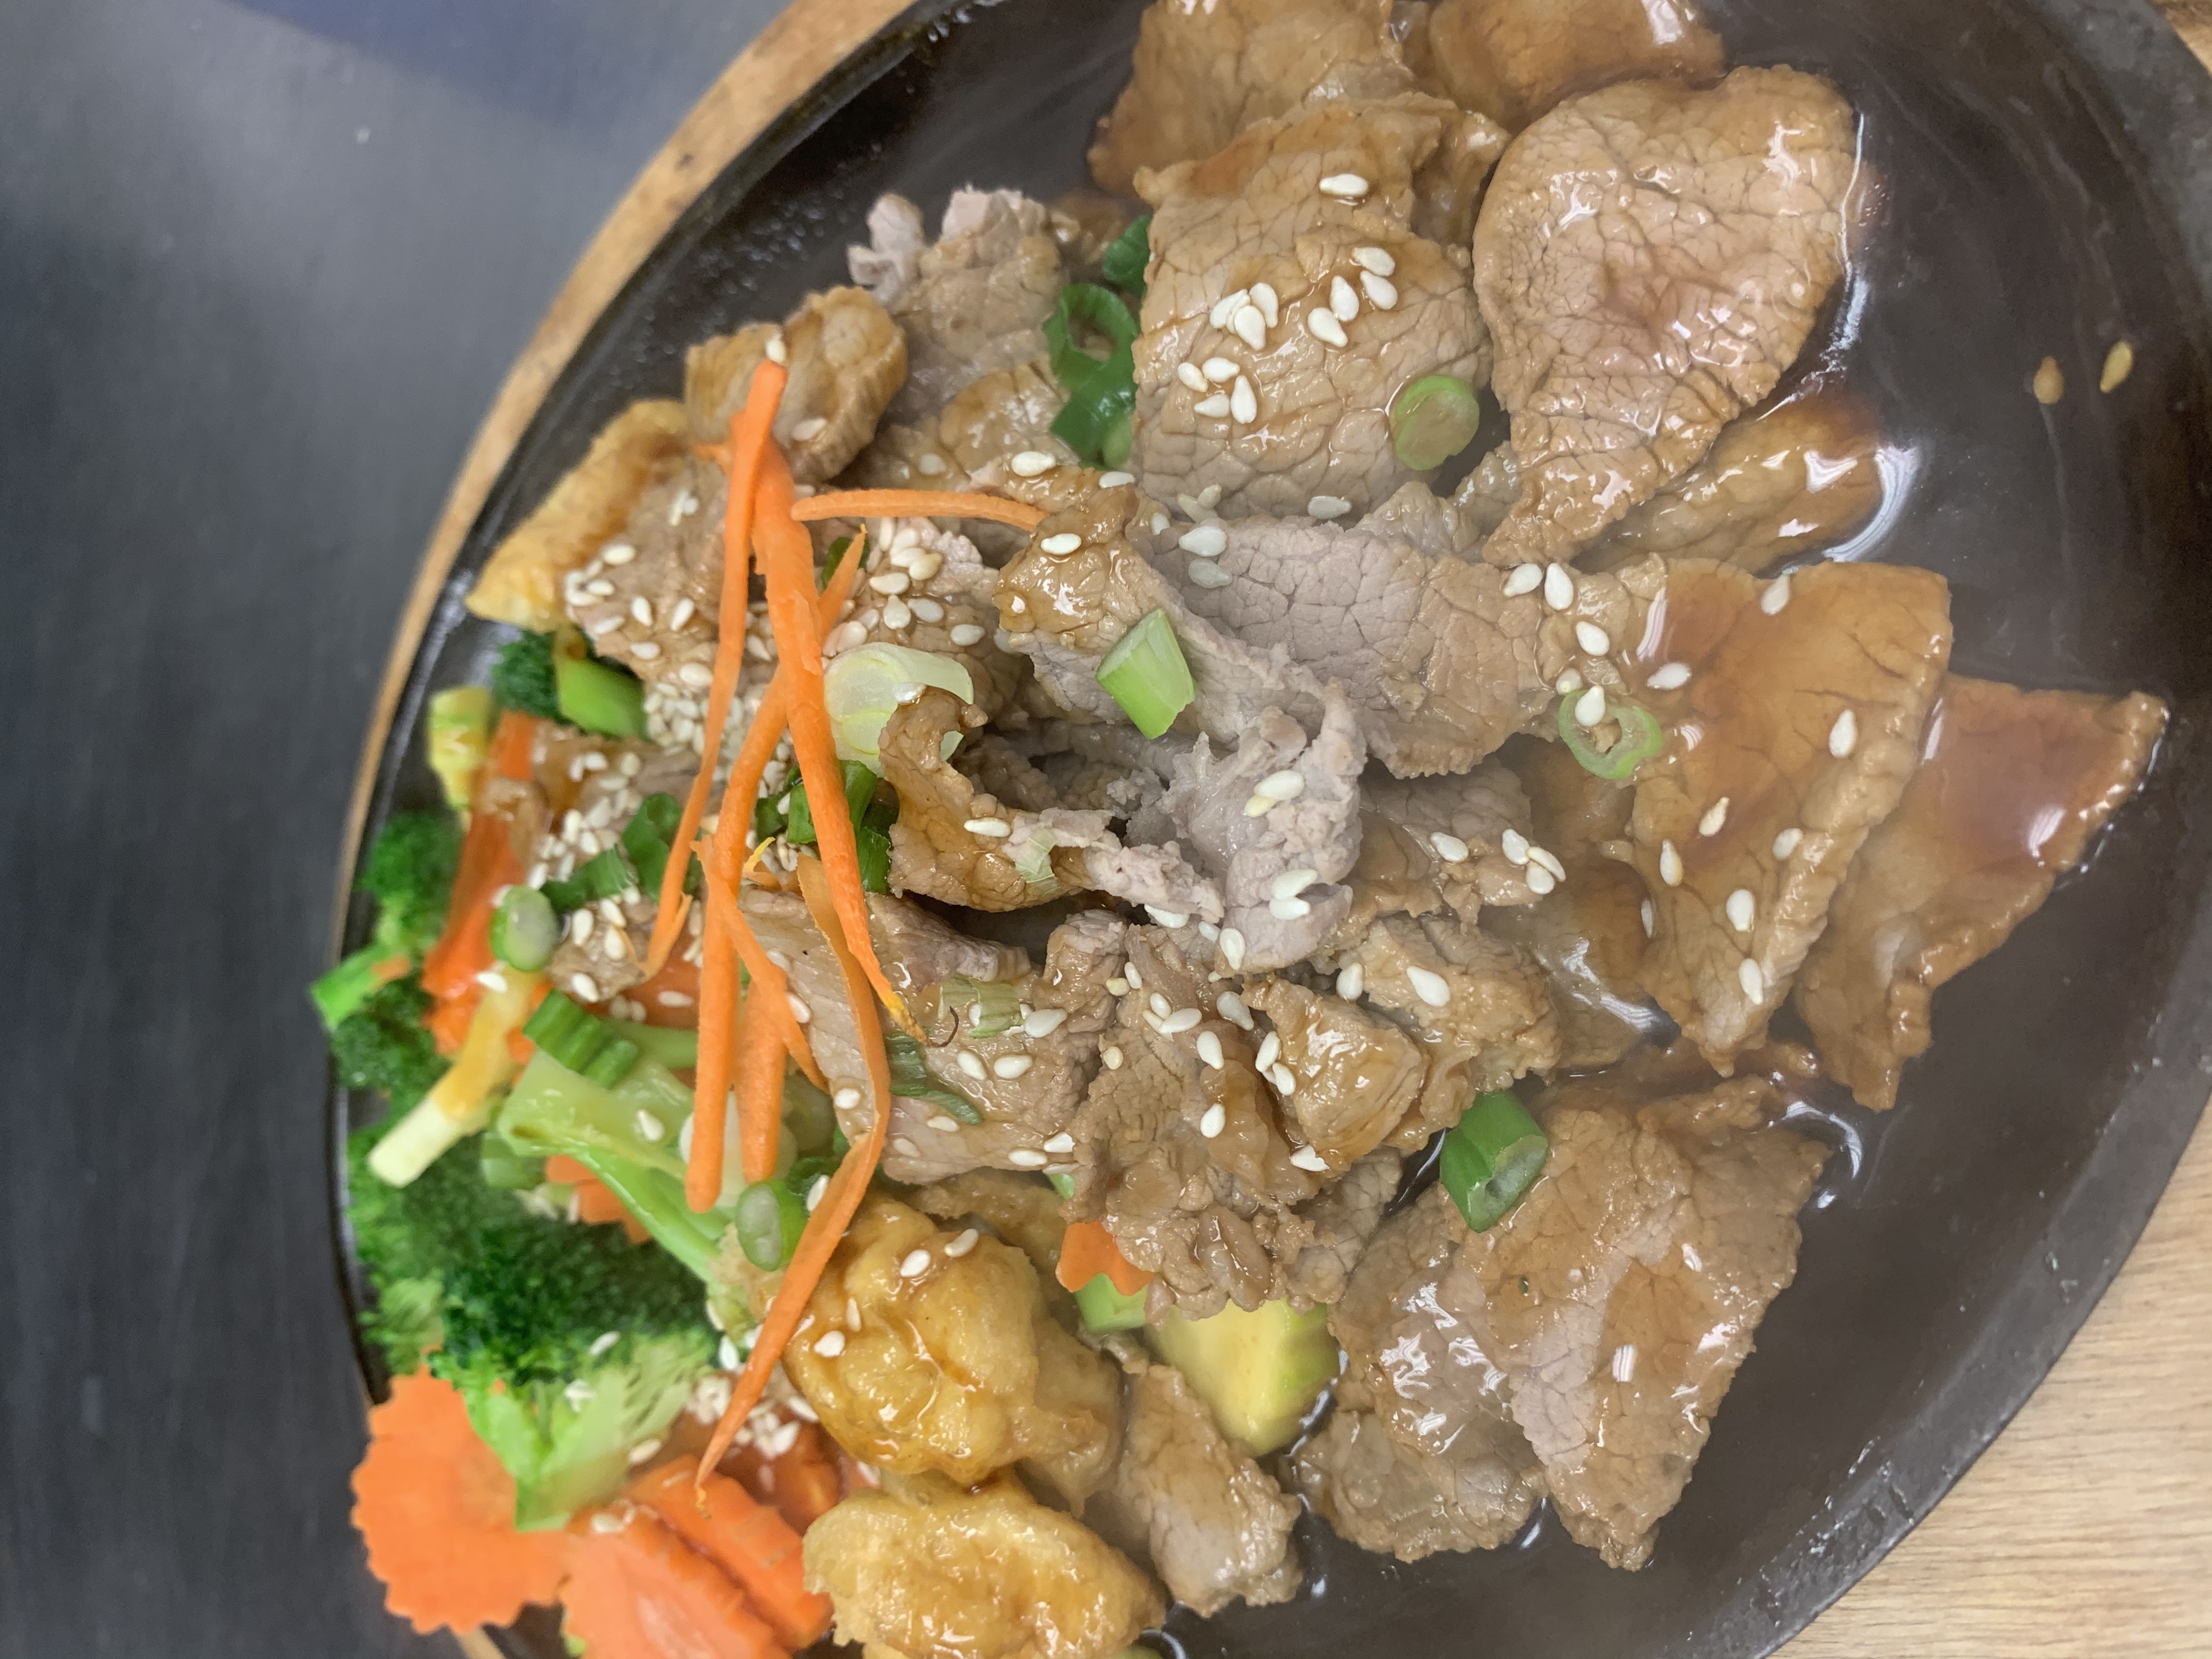 Order 79. Teriyaki Beef food online from Sirinan Thai&Japanese Restaurant store, Wallingford on bringmethat.com